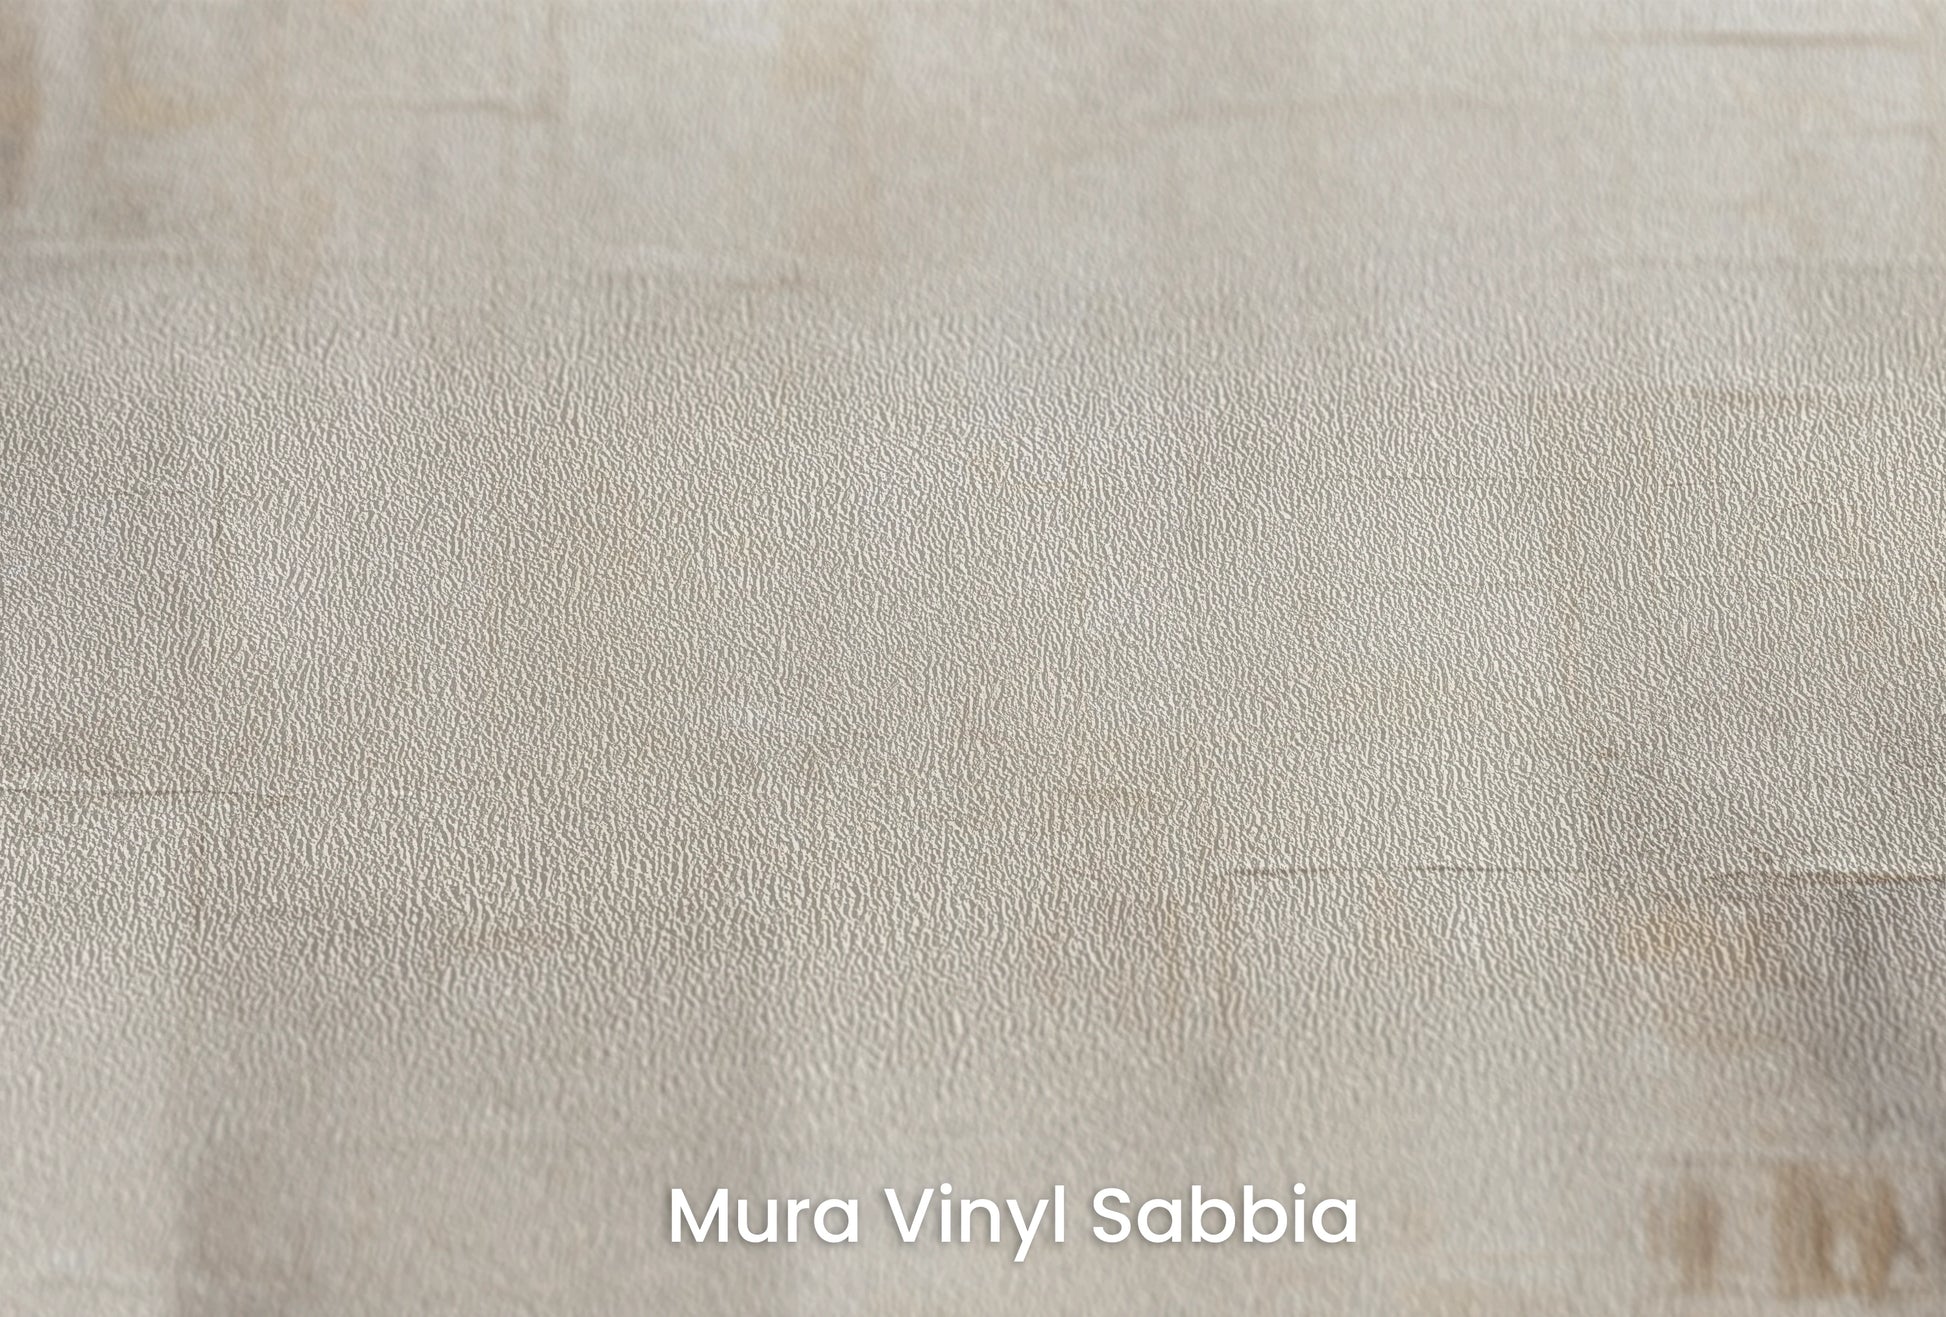 Zbliżenie na artystyczną fototapetę o nazwie Abstract Canvas na podłożu Mura Vinyl Sabbia struktura grubego ziarna piasku.